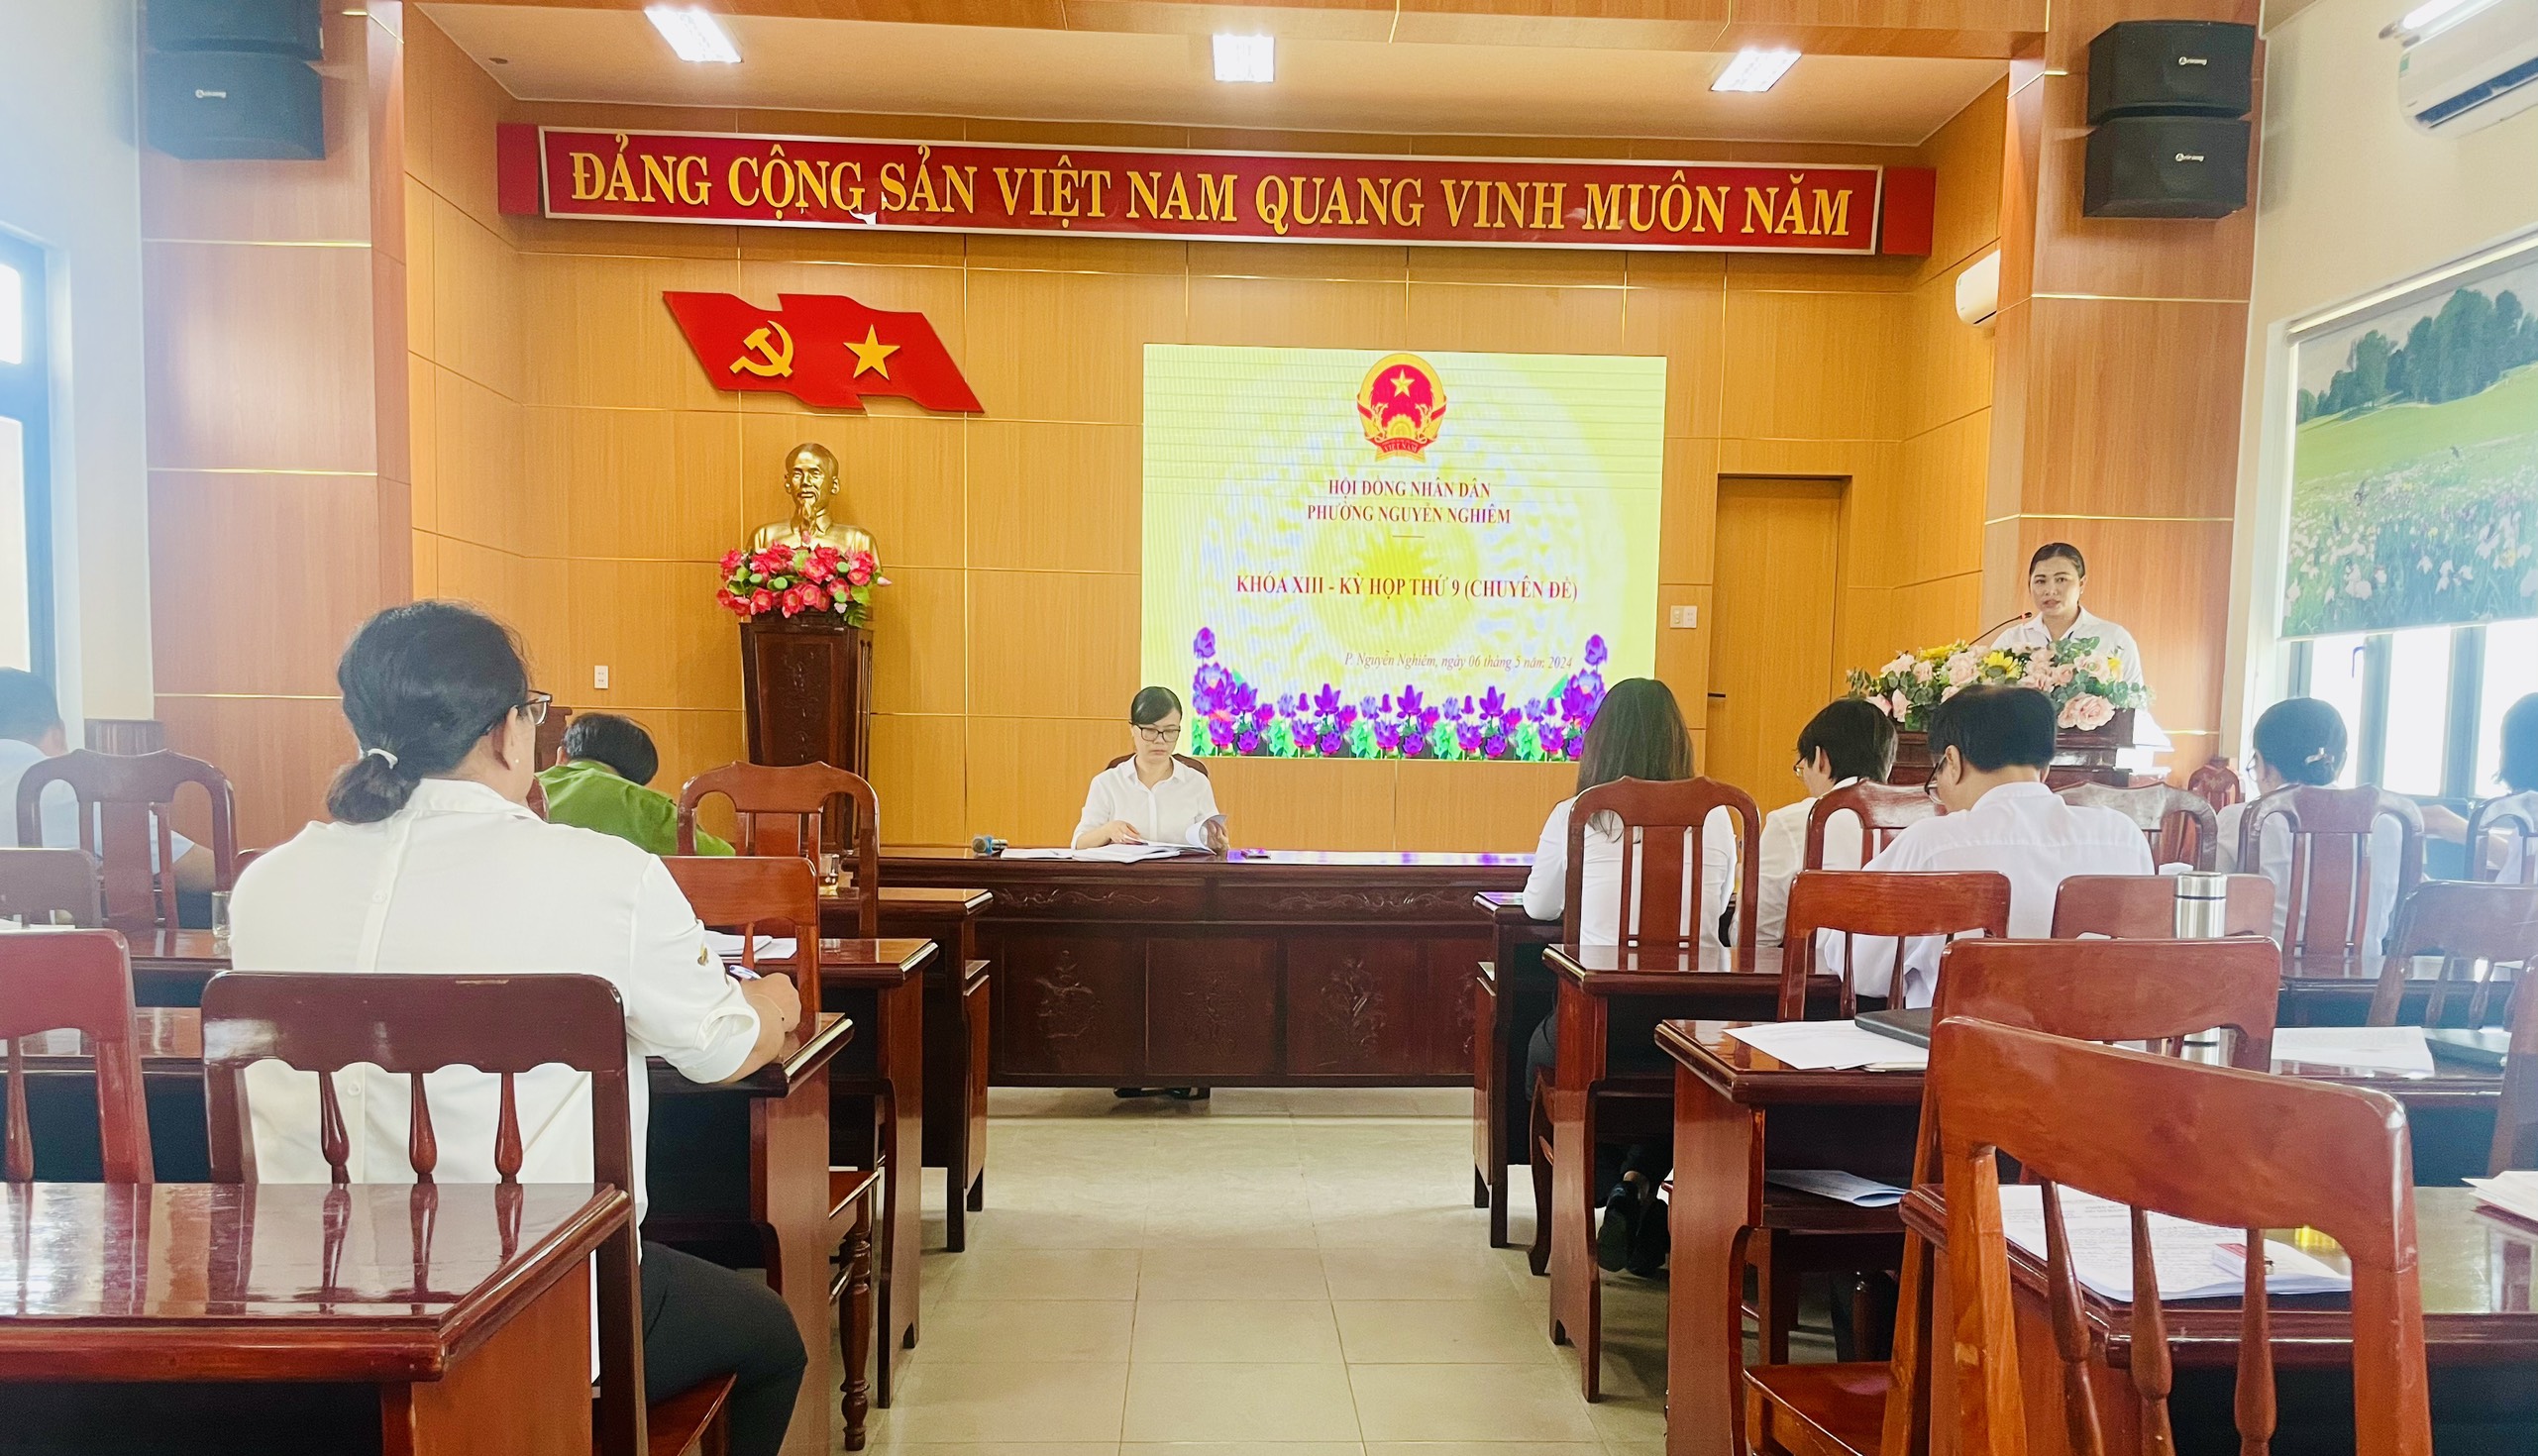 Hội đồng nhân dân phường Nguyễn Nghiêm tổ chức kỳ họp thứ 9 (chuyên đề) khóa XIII, nhiệm kỳ 2021-2026